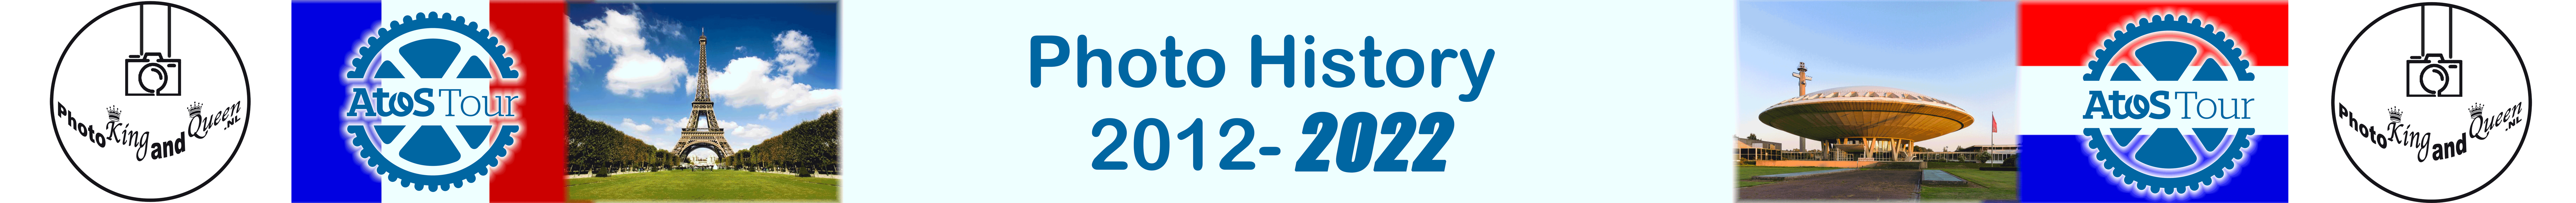 AtosTour Photo History